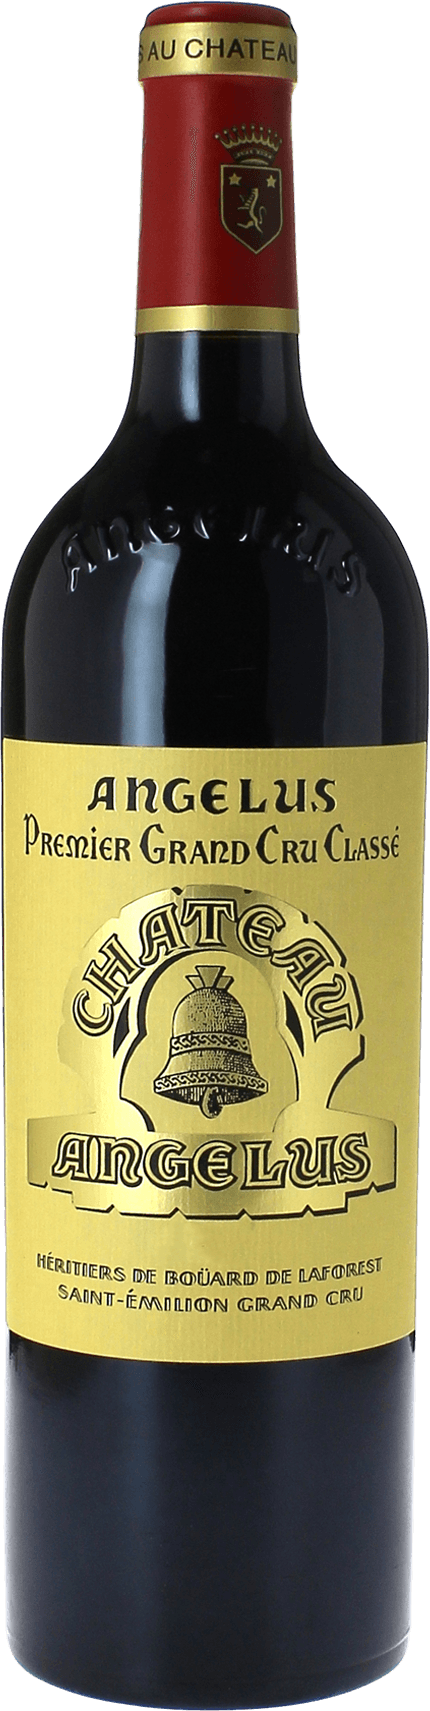 Angelus 2016 1er Grand cru class A Saint-Emilion, Bordeaux rouge